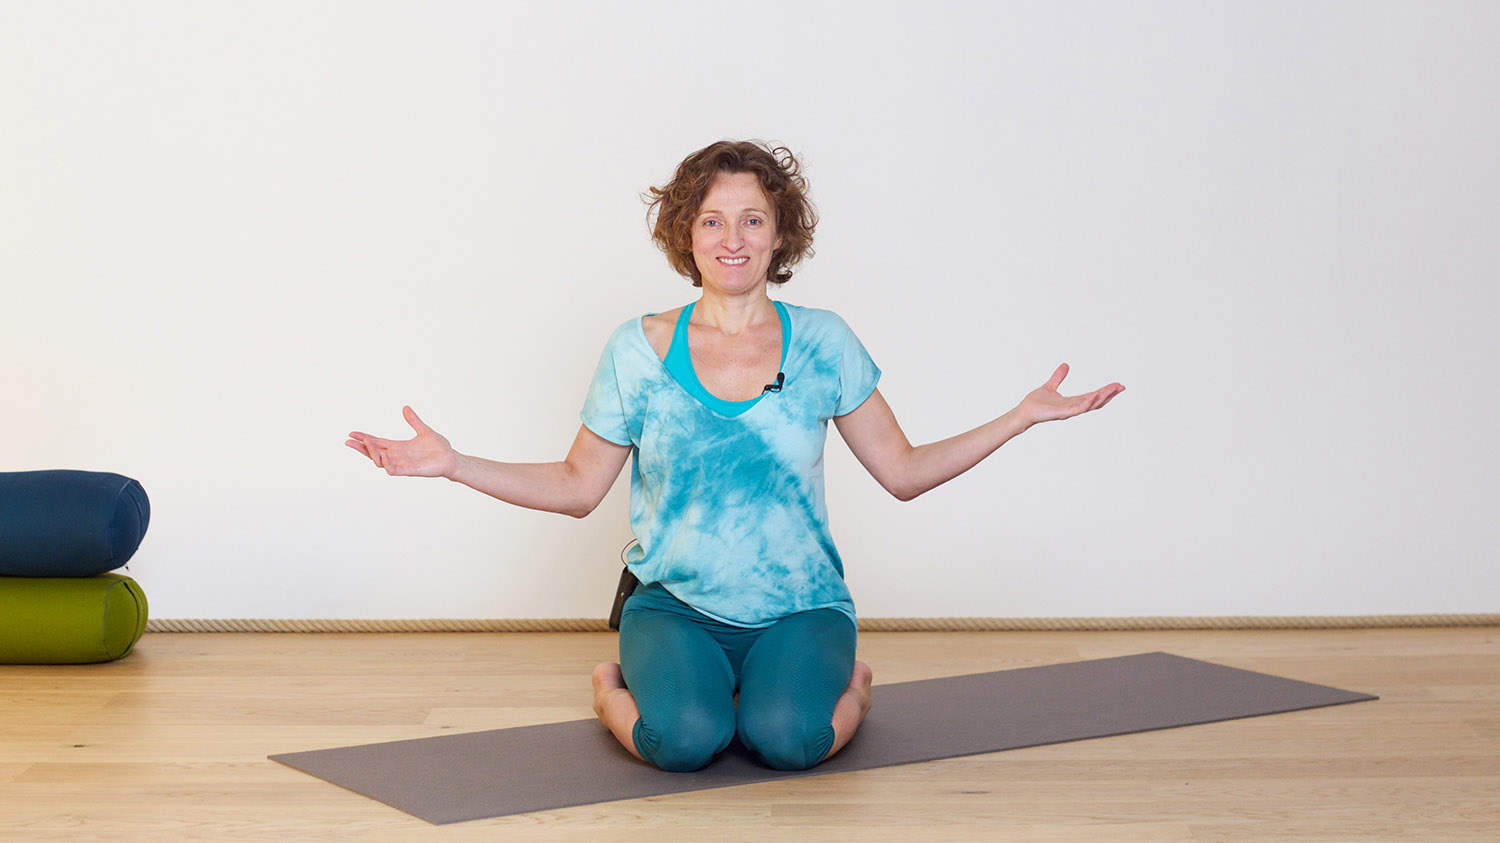 Synchroniser le mouvement et la respiration | Cours de yoga en ligne avec Delphine Denis | Hatha Yoga dynamique, Yoga Vinyasa